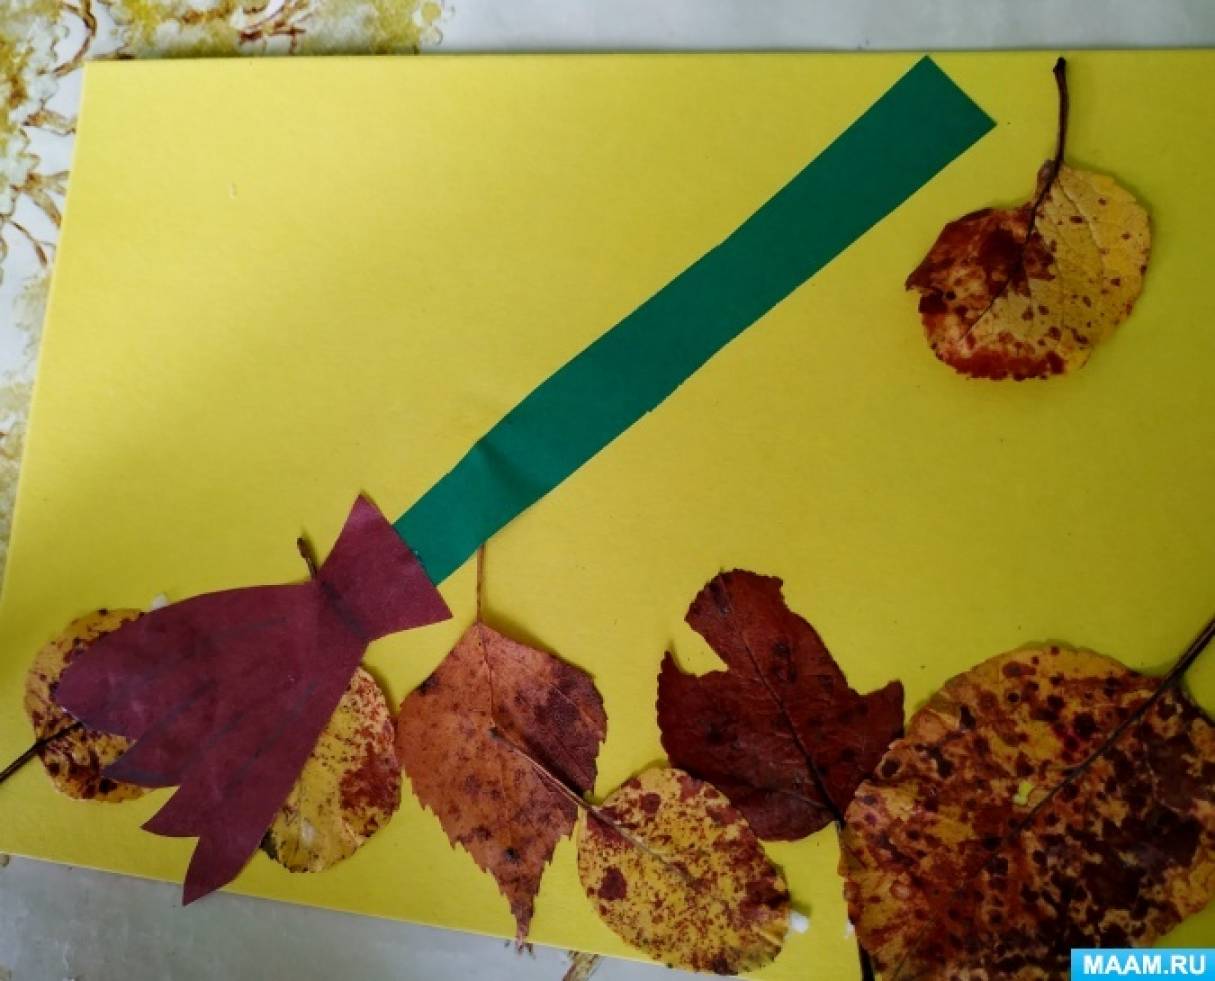 Конспект НОД по аппликации из осенних листьев «Мы метёлку в руки взяли, листья осенние убрали» в младшей группе